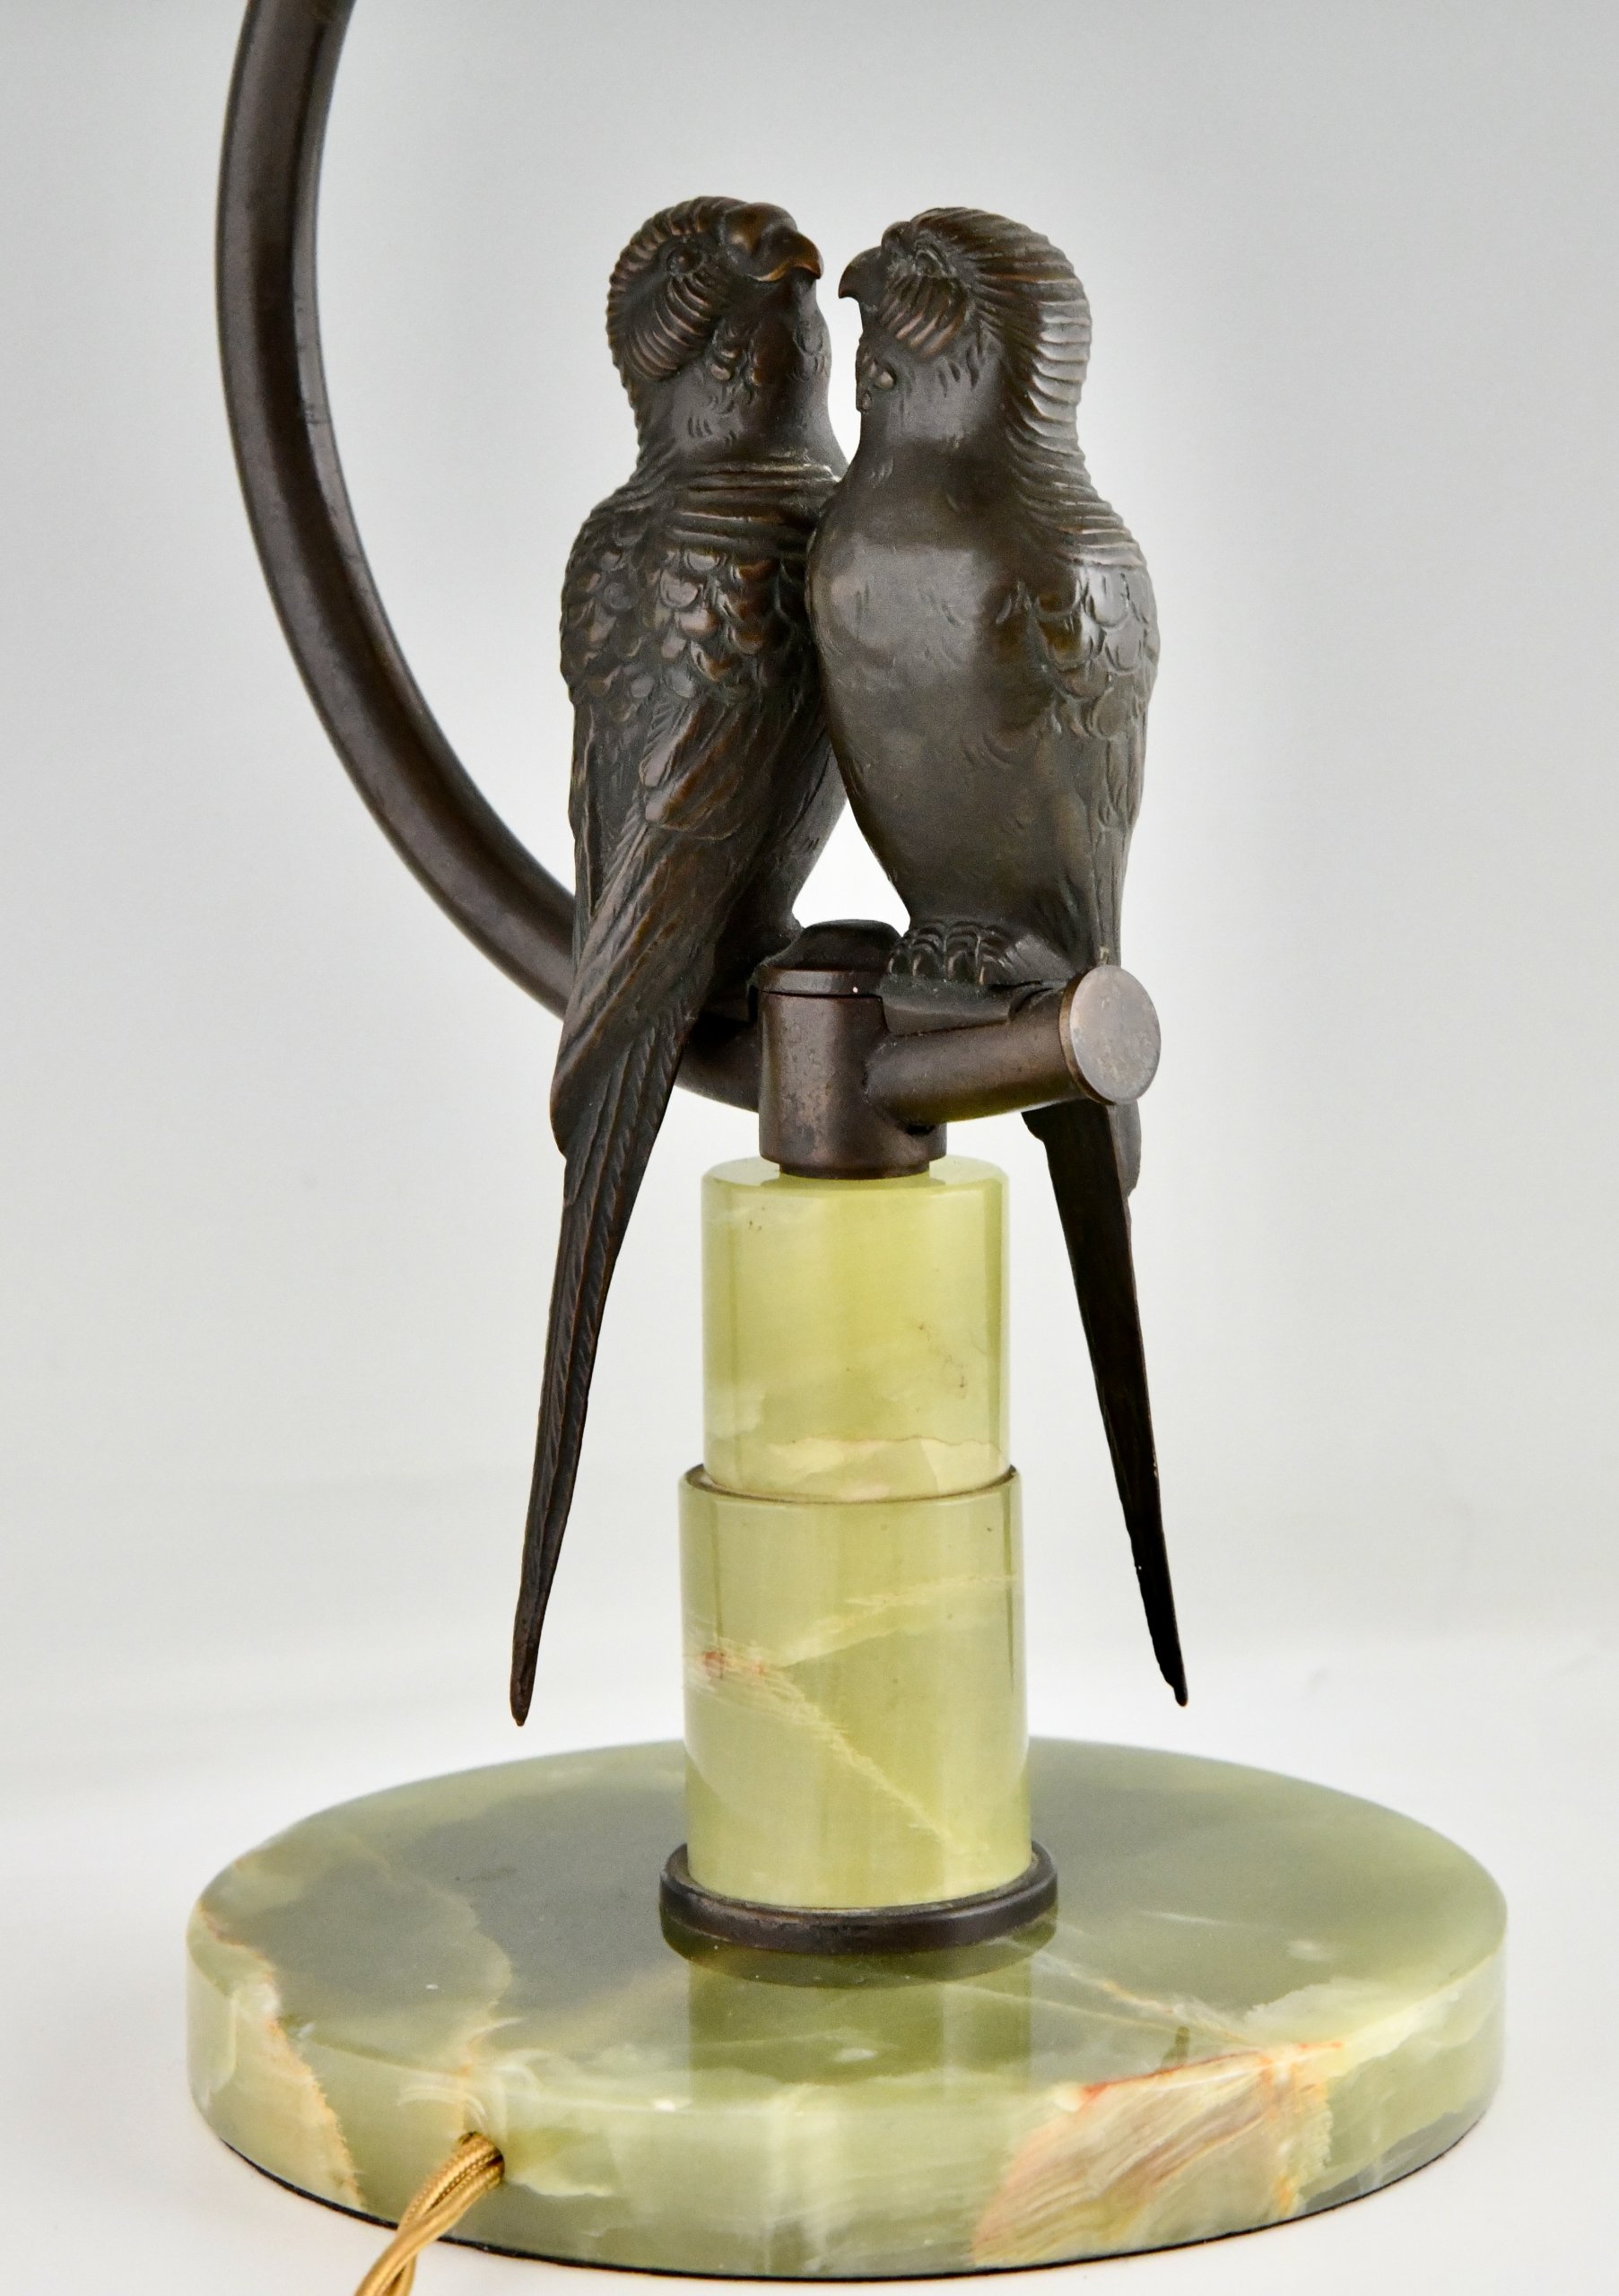 Lampe en bronze de Vienne représentant deux perruches.